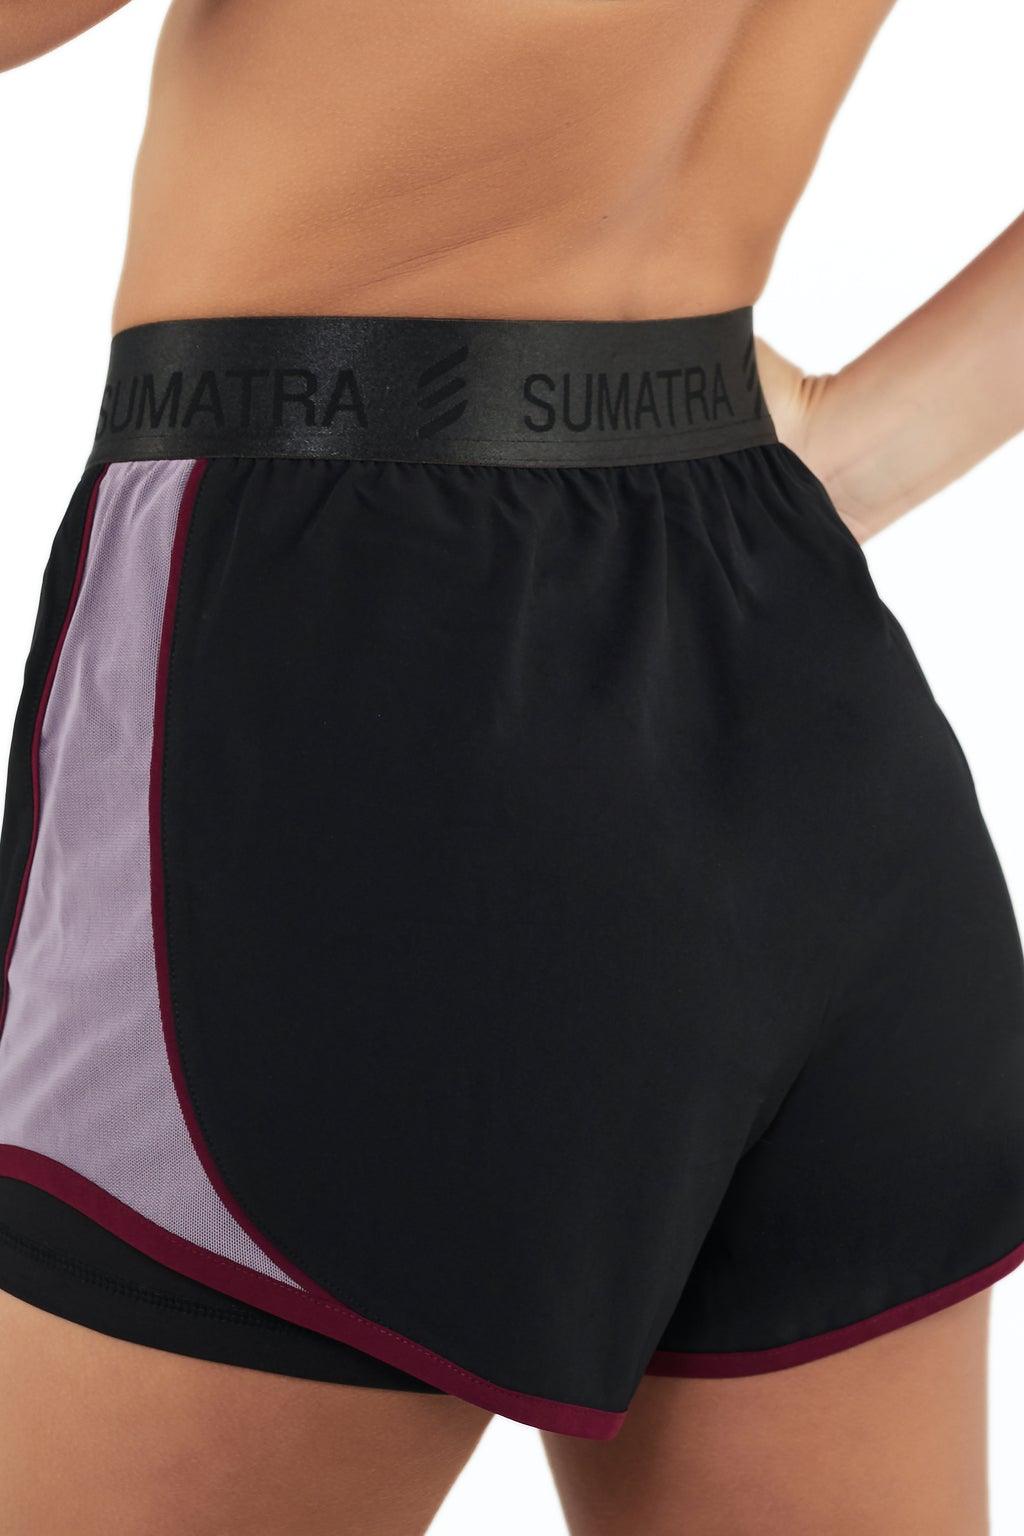 Latitude Shorts - Sumatra Active